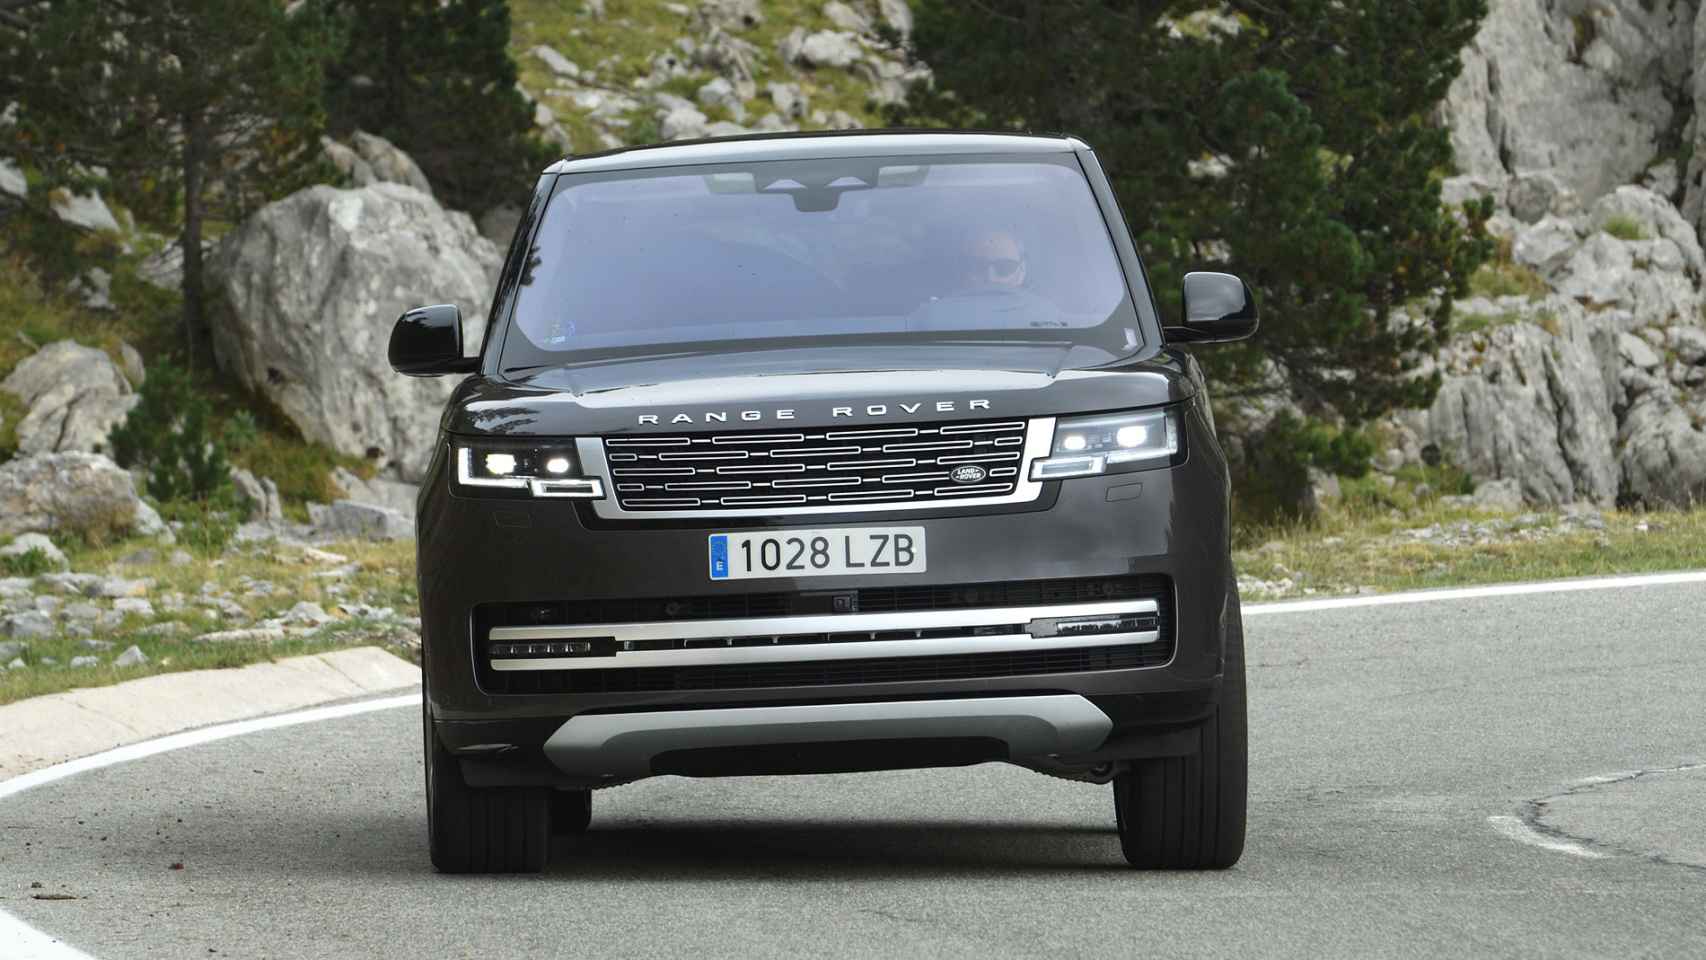 El Range Rover sigue siendo uno de los coches más deseados por su imponente imagen.